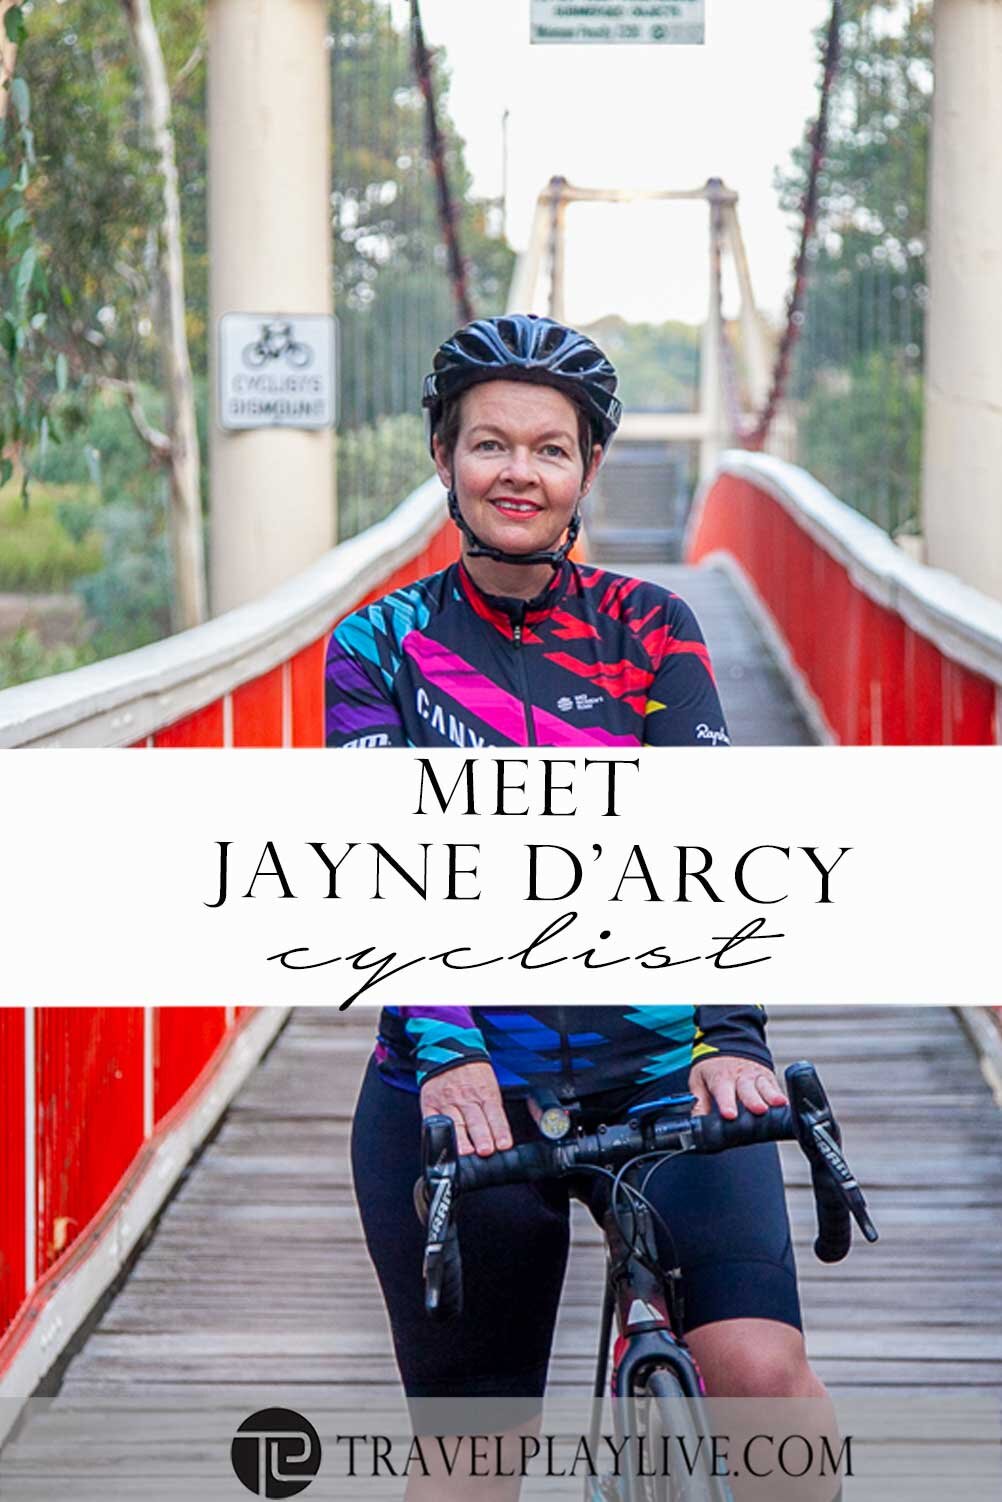 Jayne Darcy-cyclist1.jpg